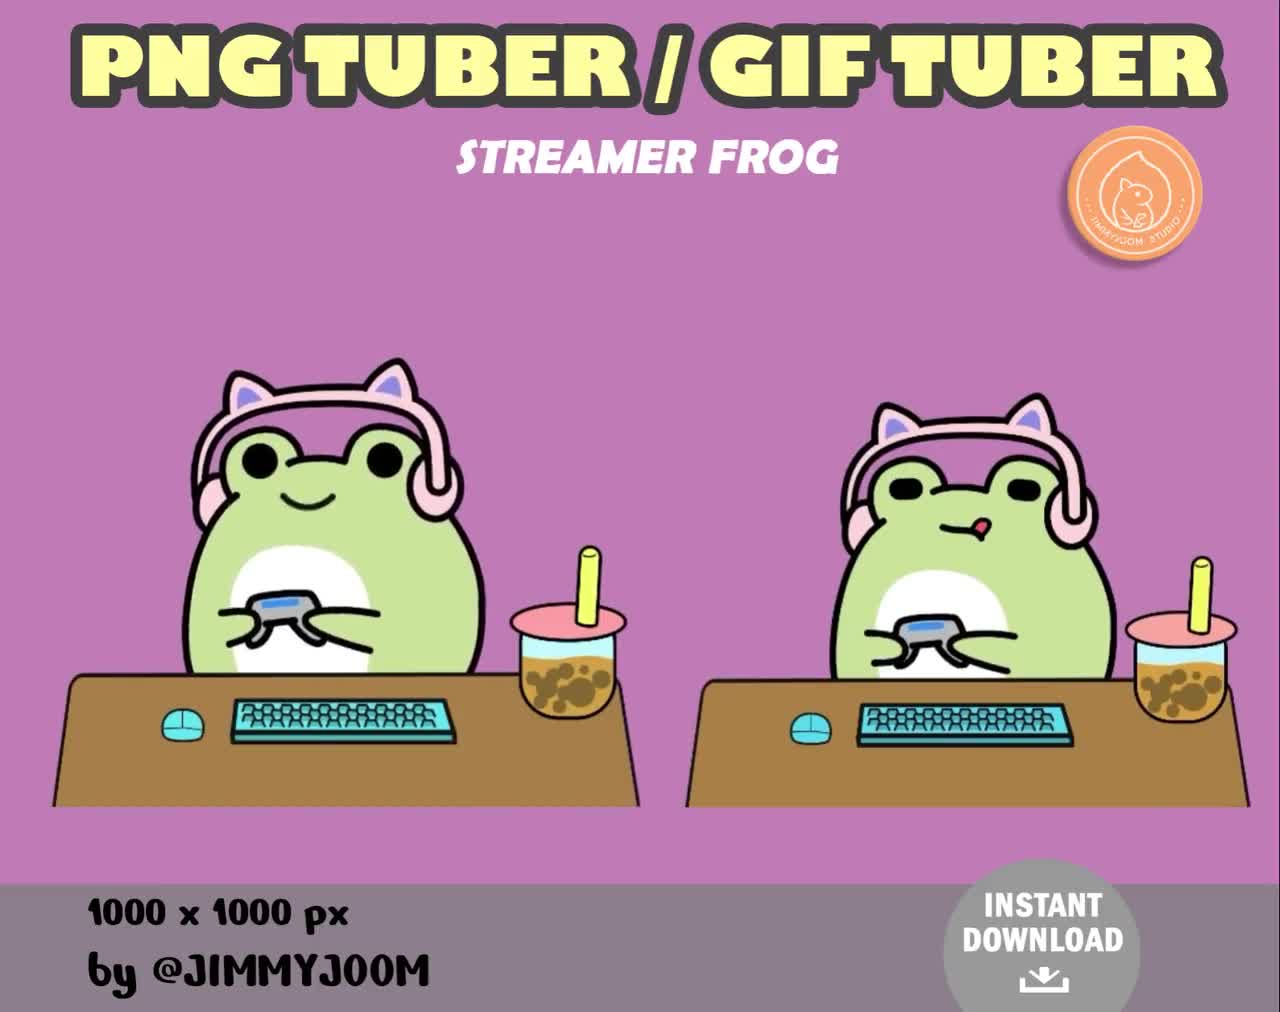 Kawaii Animated Frog GIF Twitch Discord PNGtuber, Vtuber, Emote for Stream